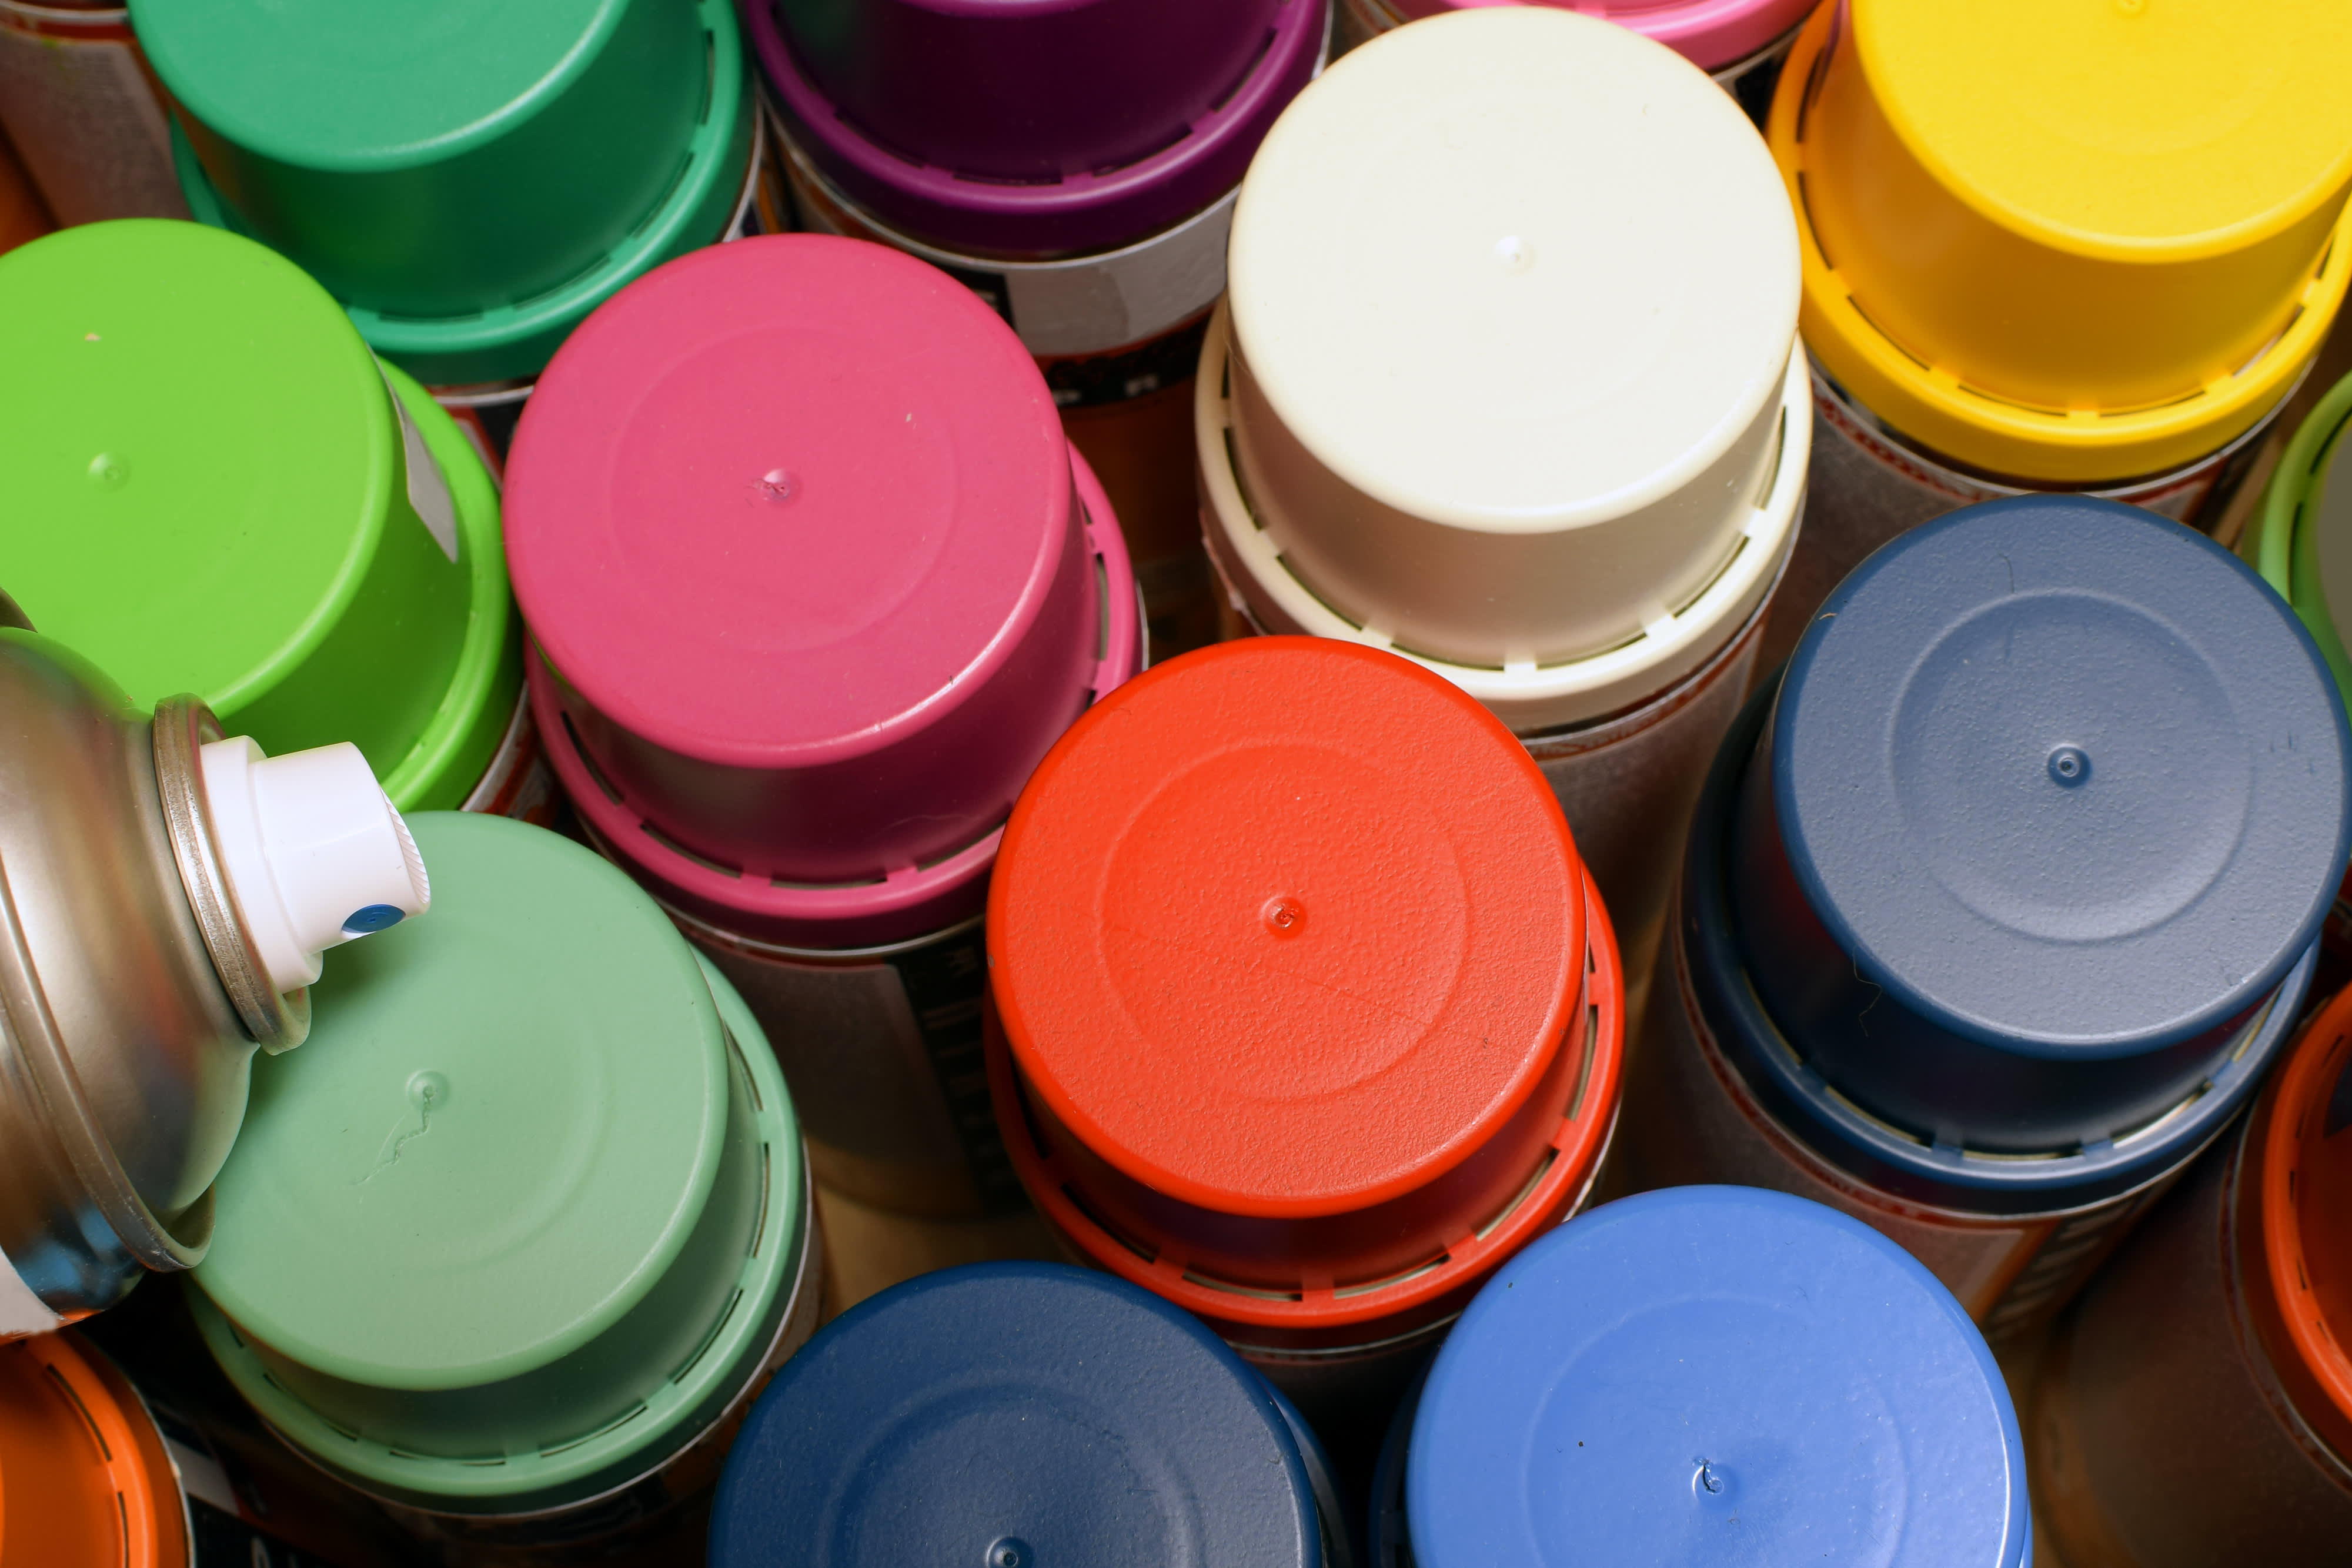 Krylon, Pro Marking Spray Paint in 13 colors